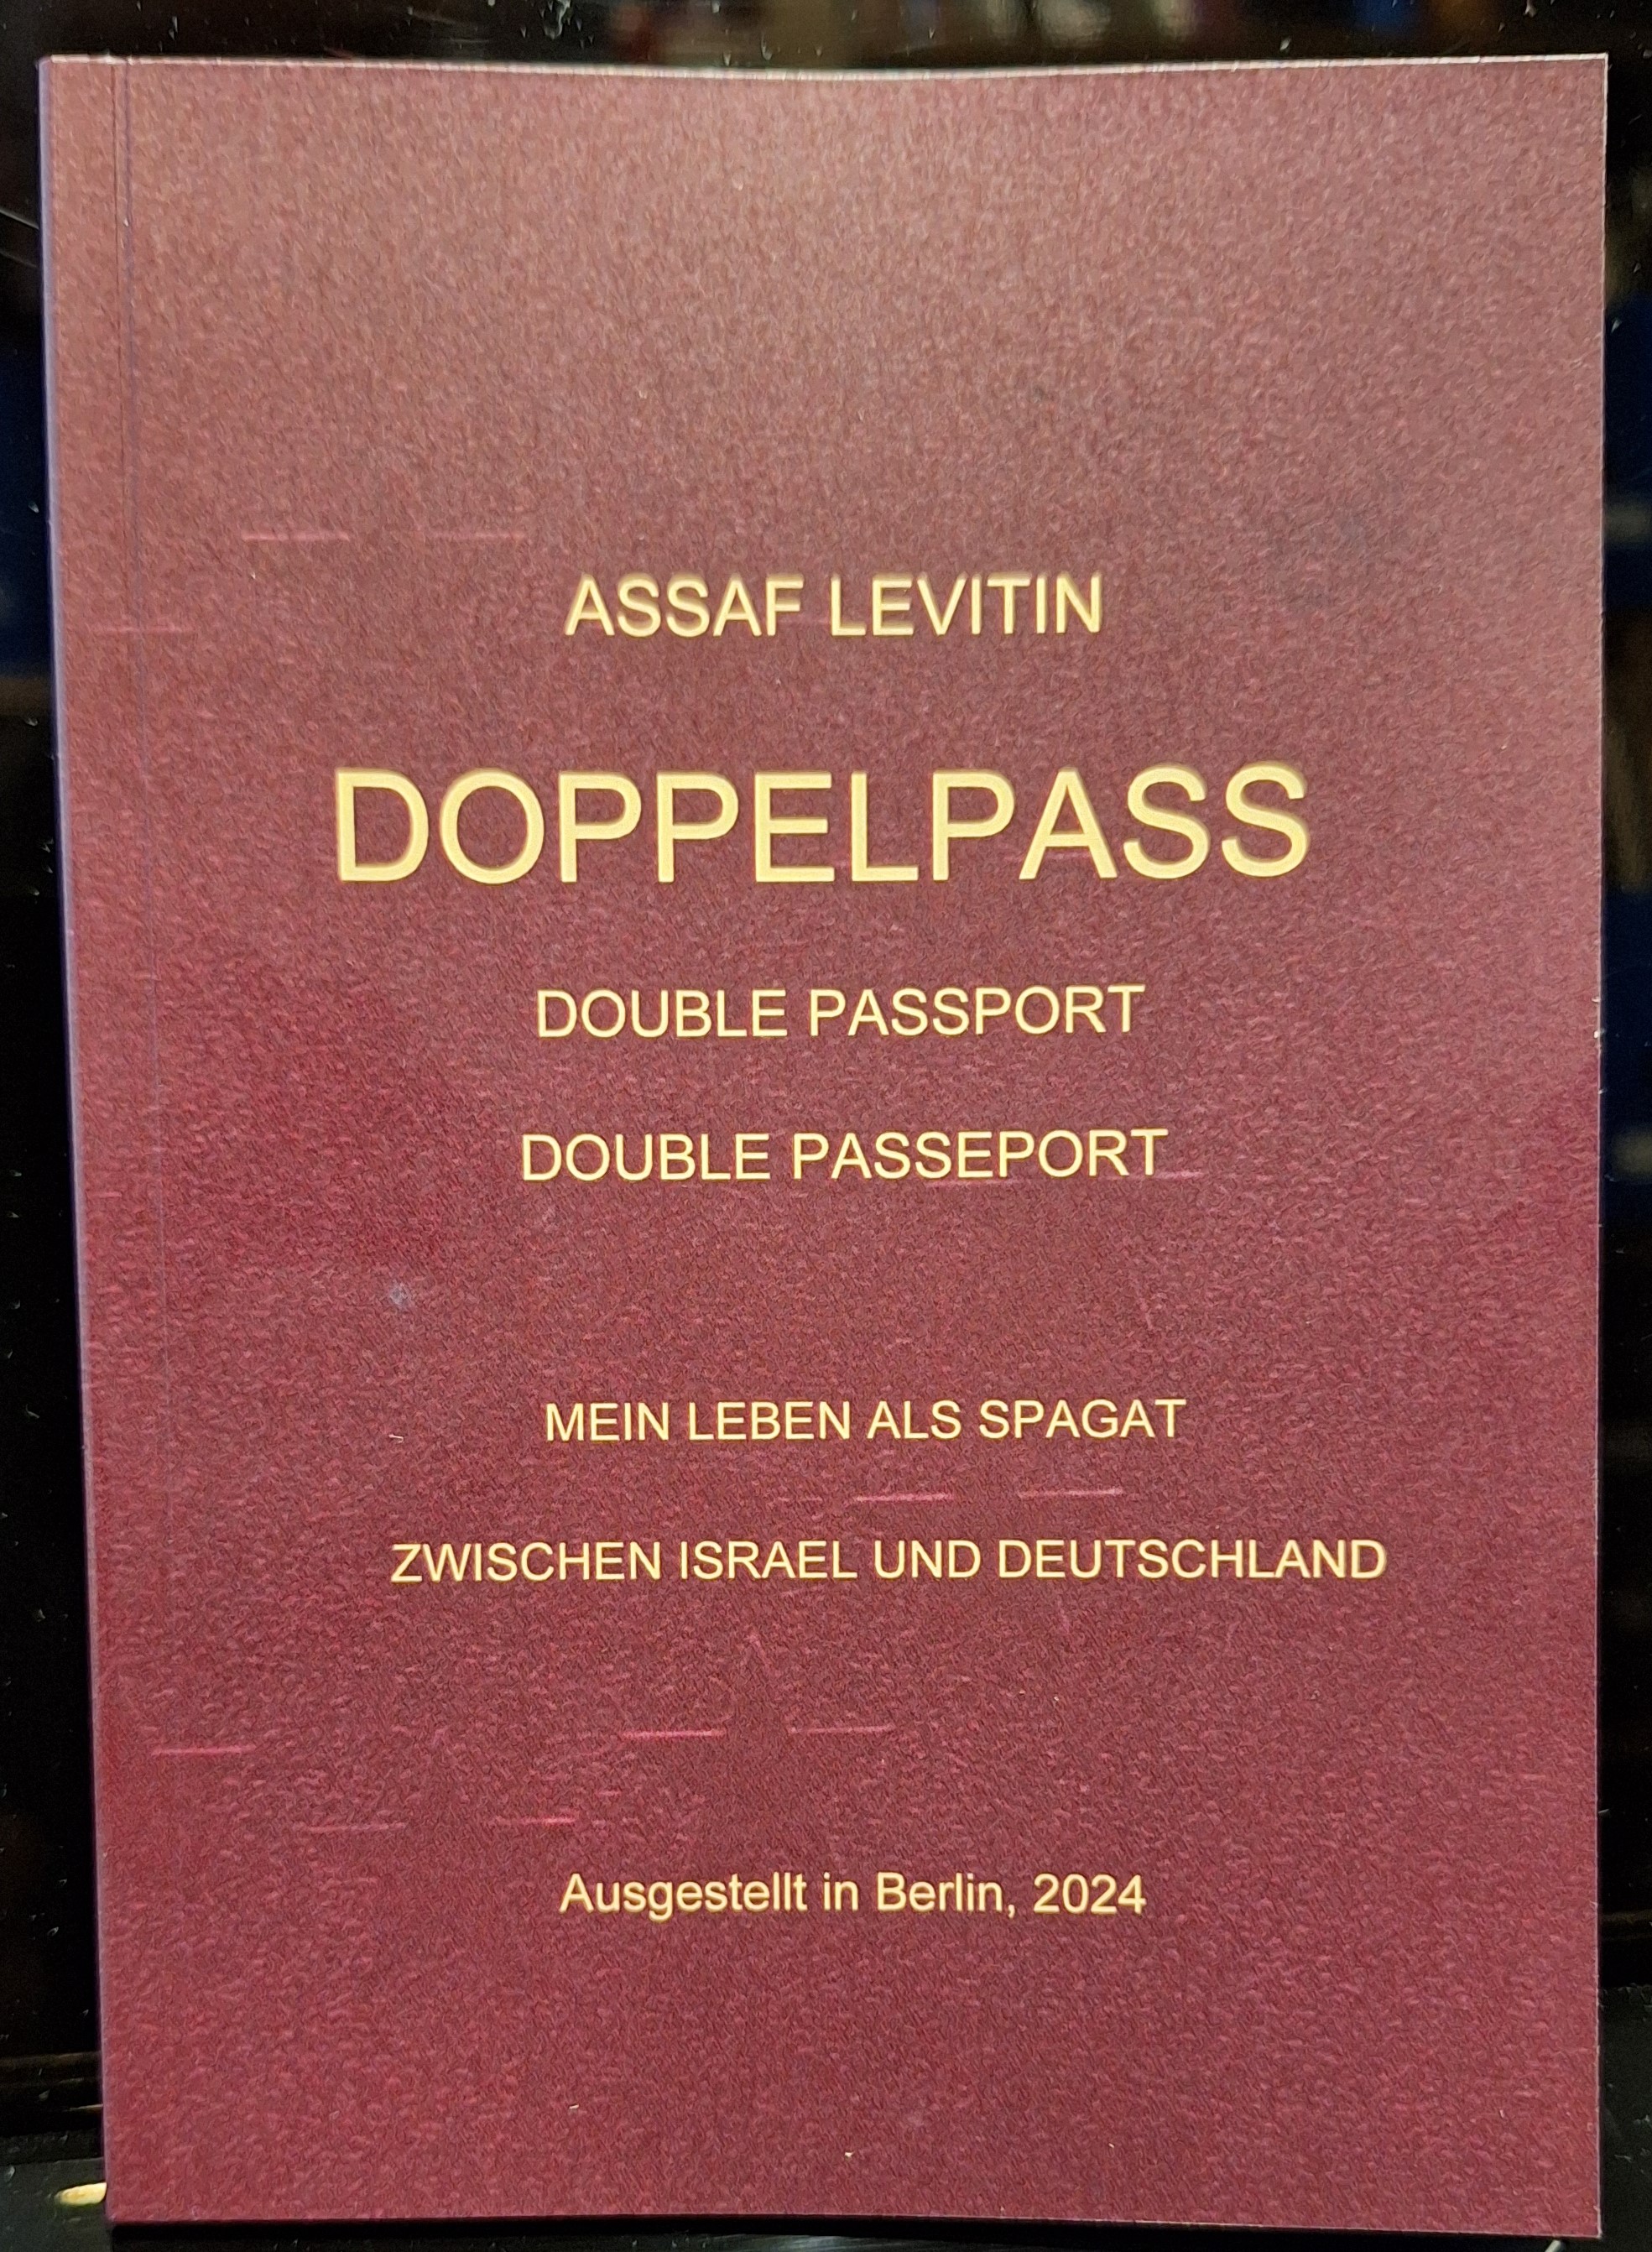 /UserUploadFiles/assaf-levitin/doppelpass-cover.jpg